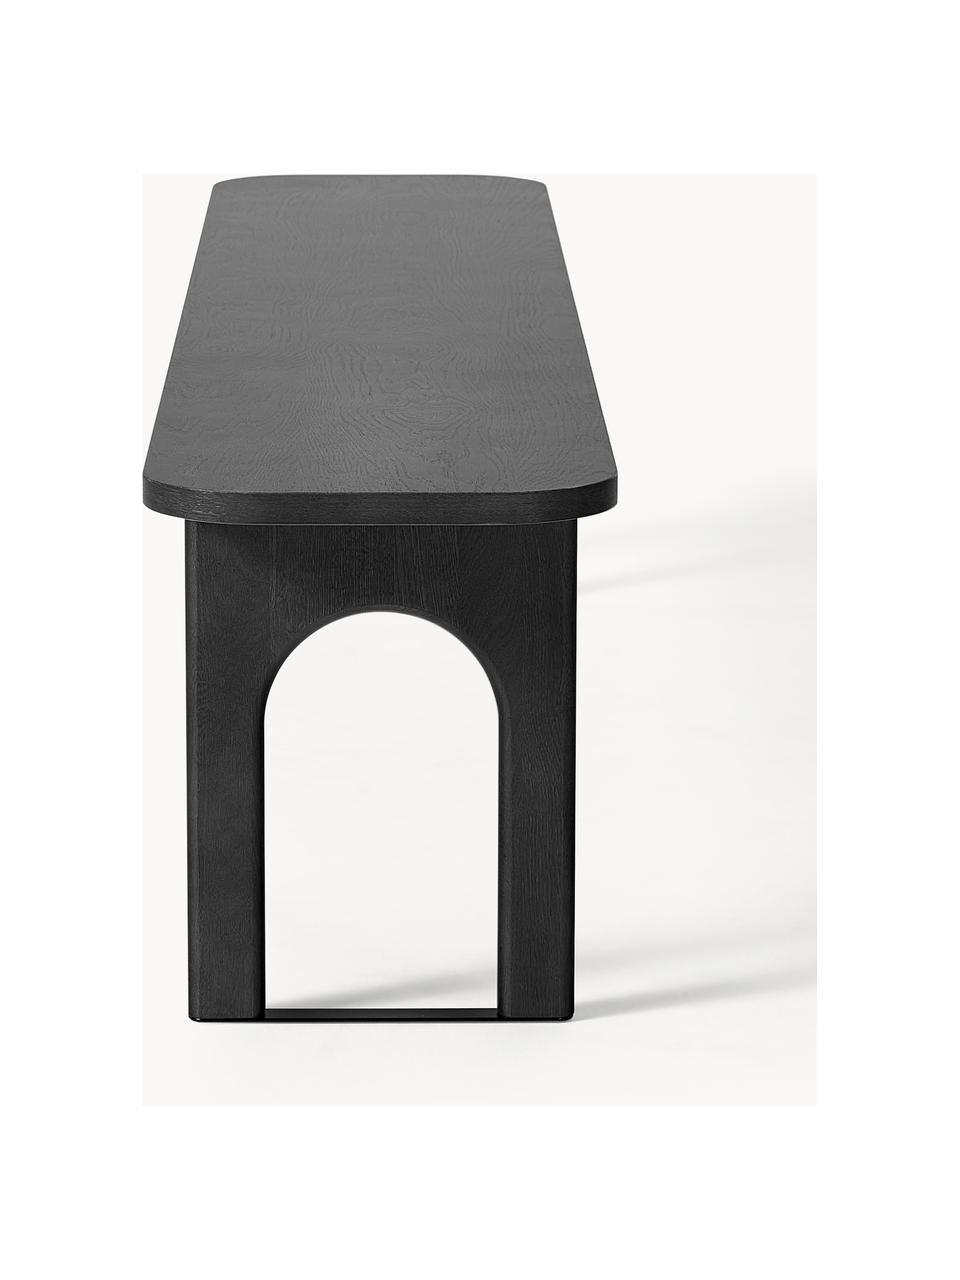 Holz-Sitzbank Apollo, verschiedene Grössen, Sitzfläche: Eichenholzfurnier, lackie, Beine: Eichenholz, lackiert Dies, Eichenholz, schwarz lackiert, B 180 x T 37 cm